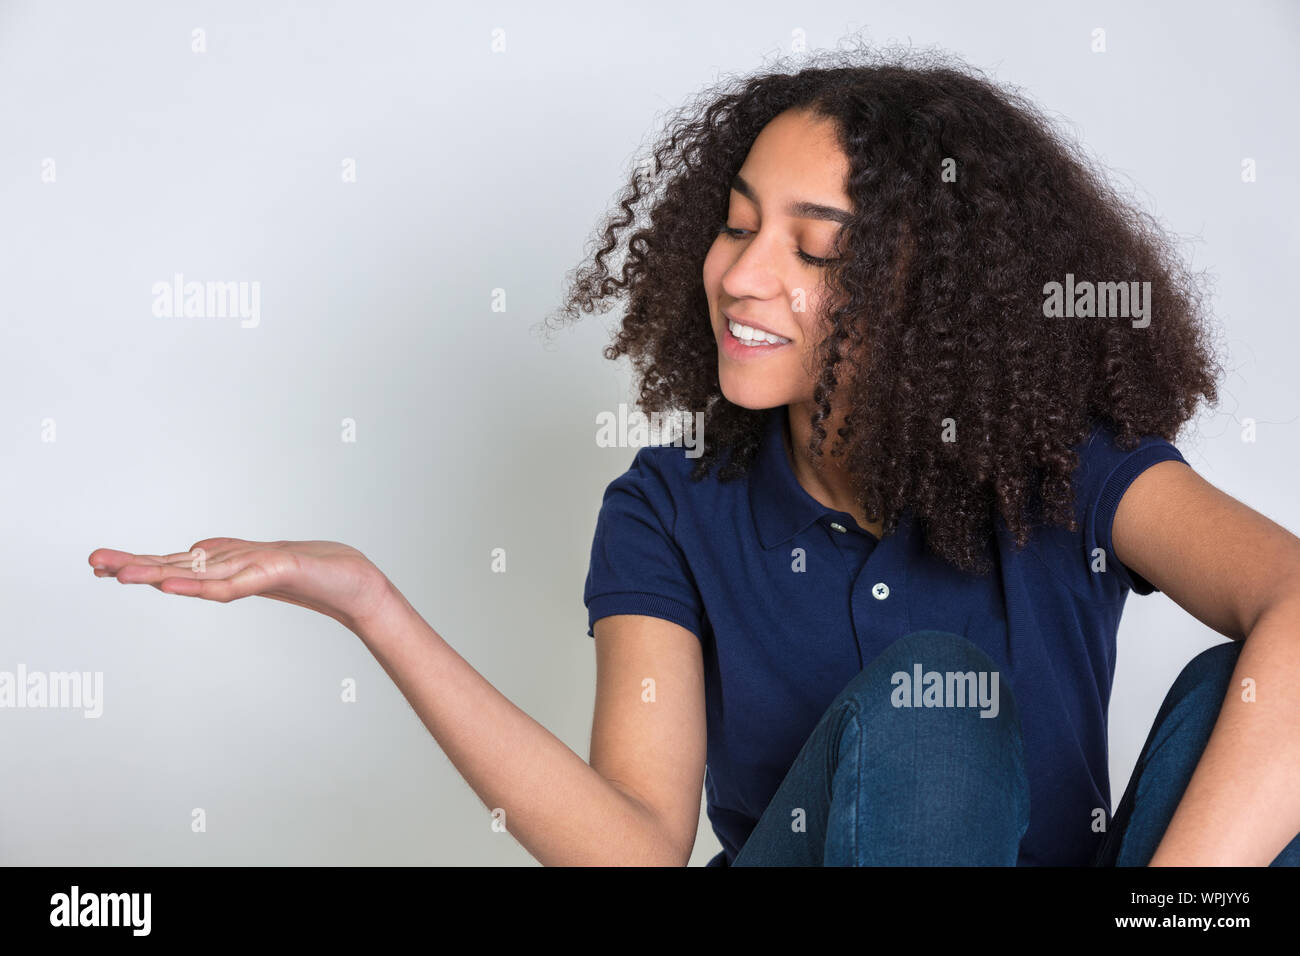 Studio Aufnahme eines biracial Mixed Race African American Girl weibliche Teenager Teenager junge Frau mit lockigem Haar, ihr leere Hand ausgestreckt r Stockfoto